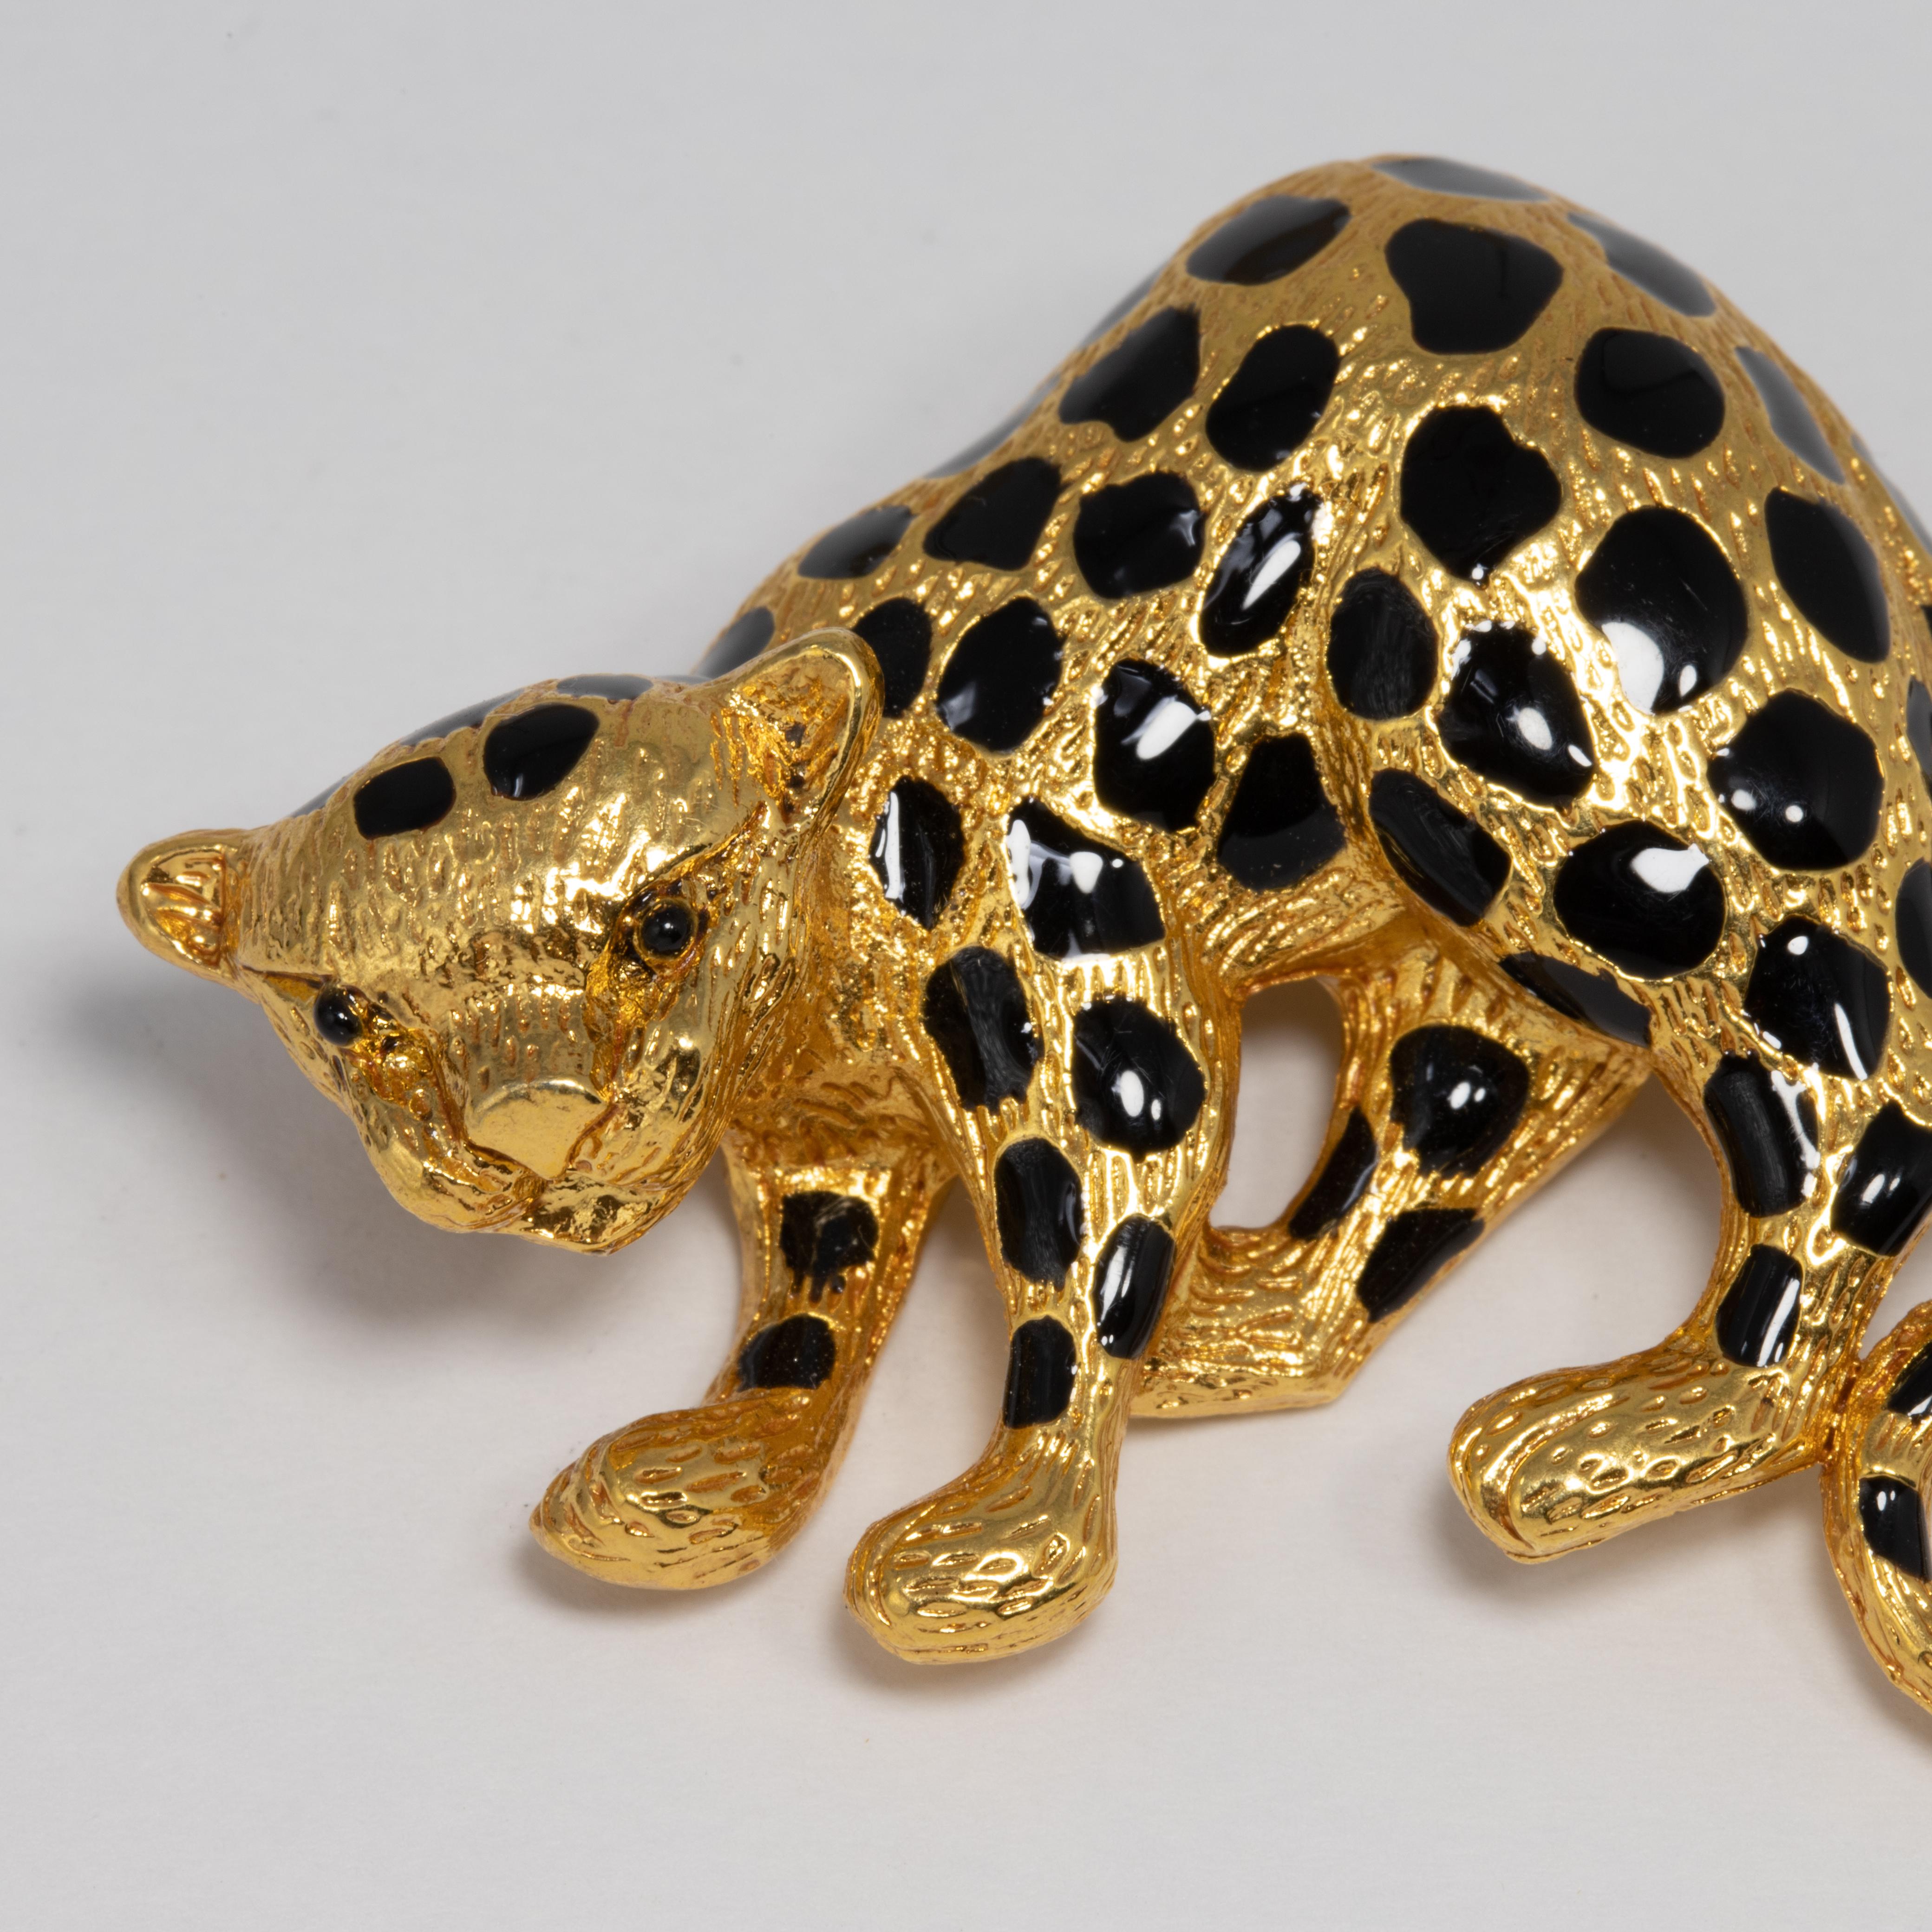 Une broche en forme de guépard accroupi par Oscar de la Renta. Ce chat sauvage en plaqué or est peint avec de saisissantes taches d'émail noir.

Poinçons : Oscar de la Renta, Made in USA